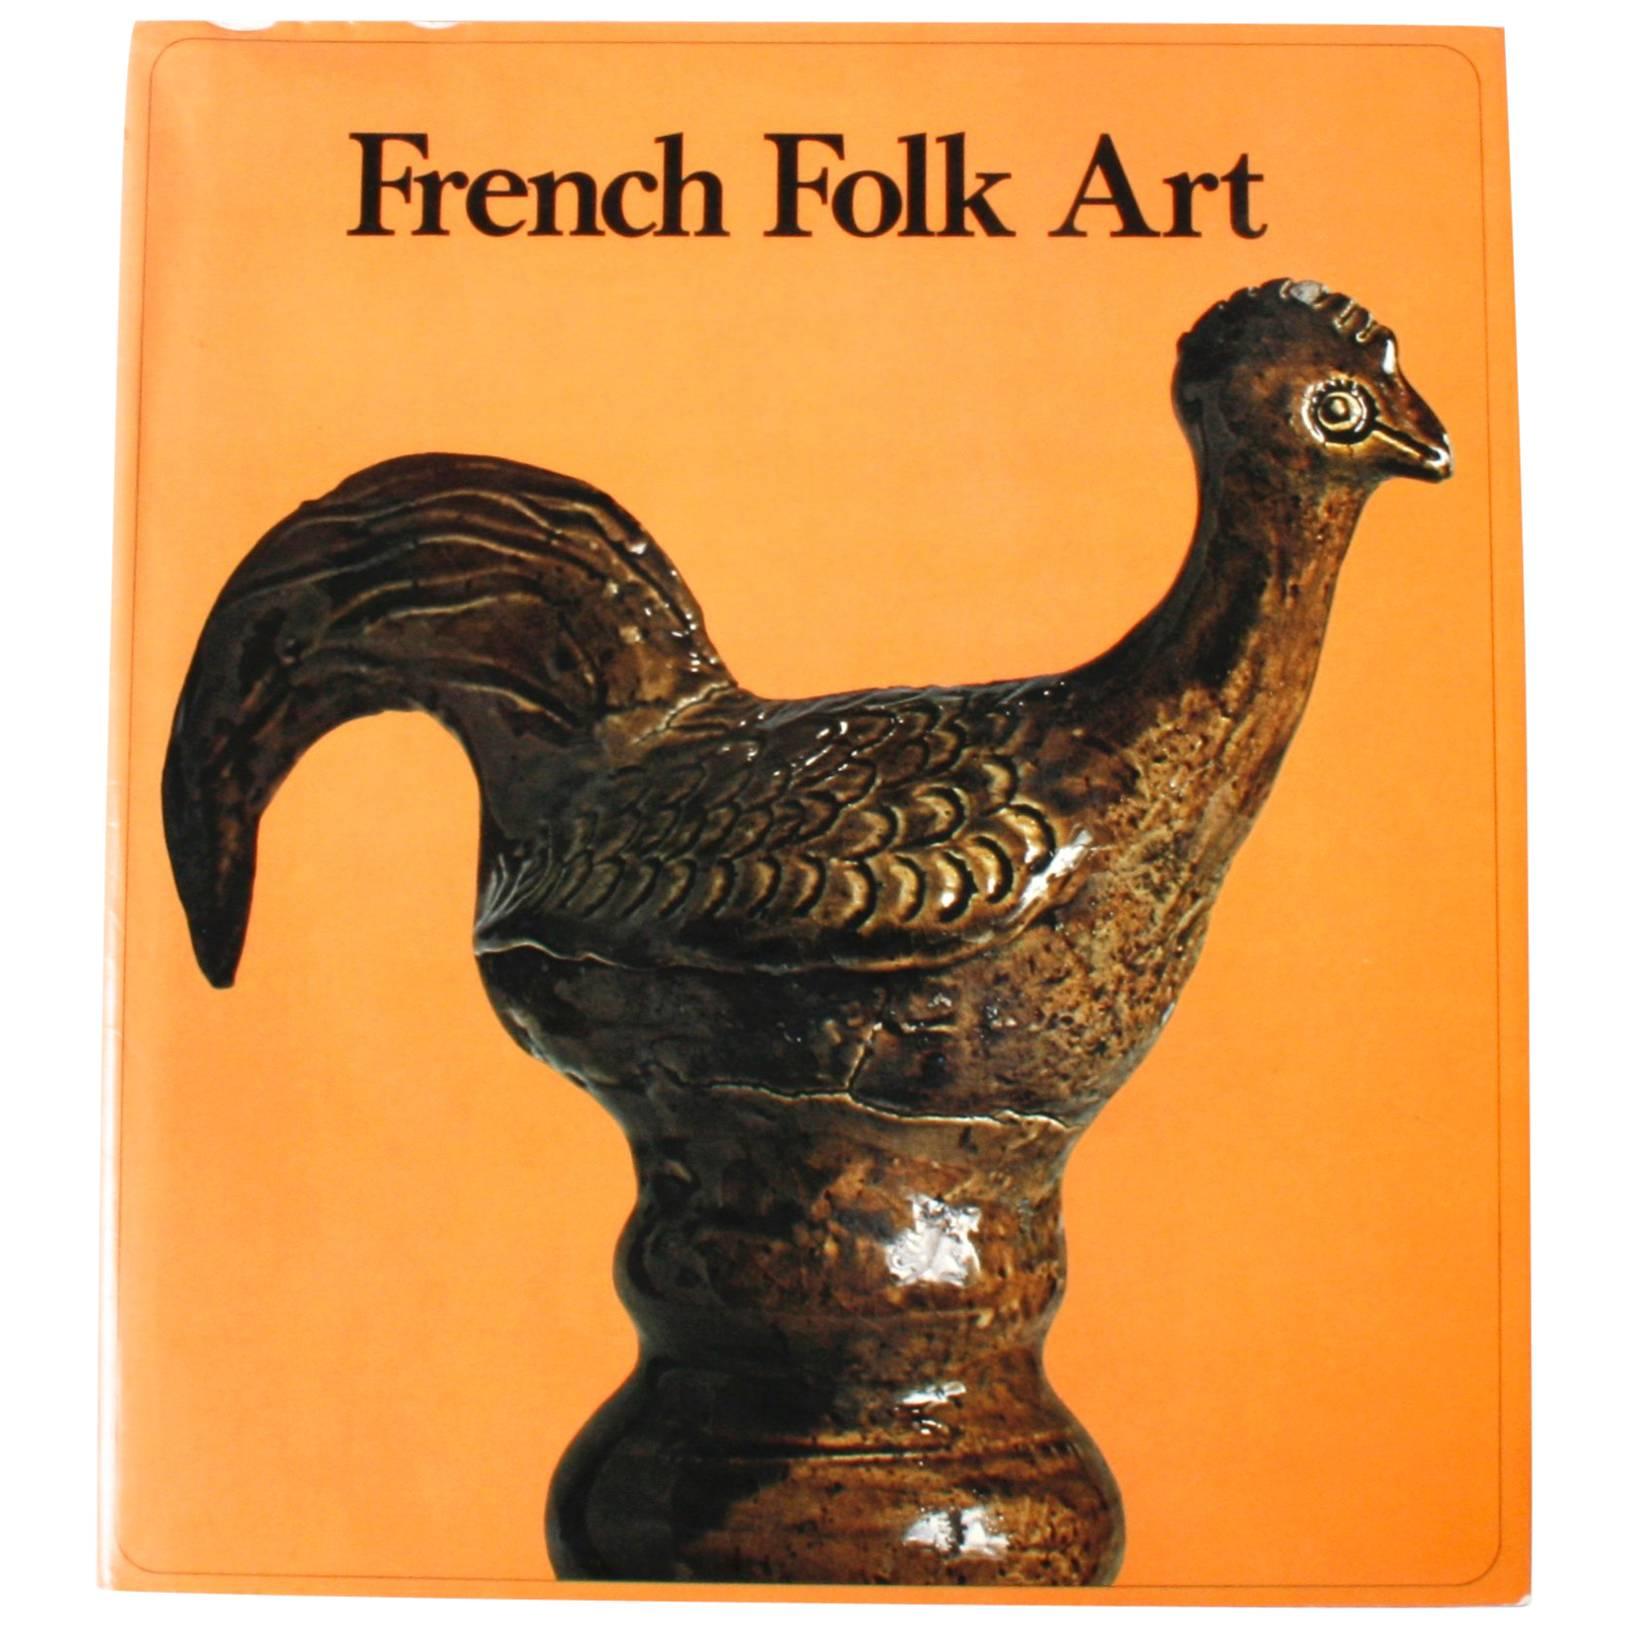 French Folk Art, First Edition